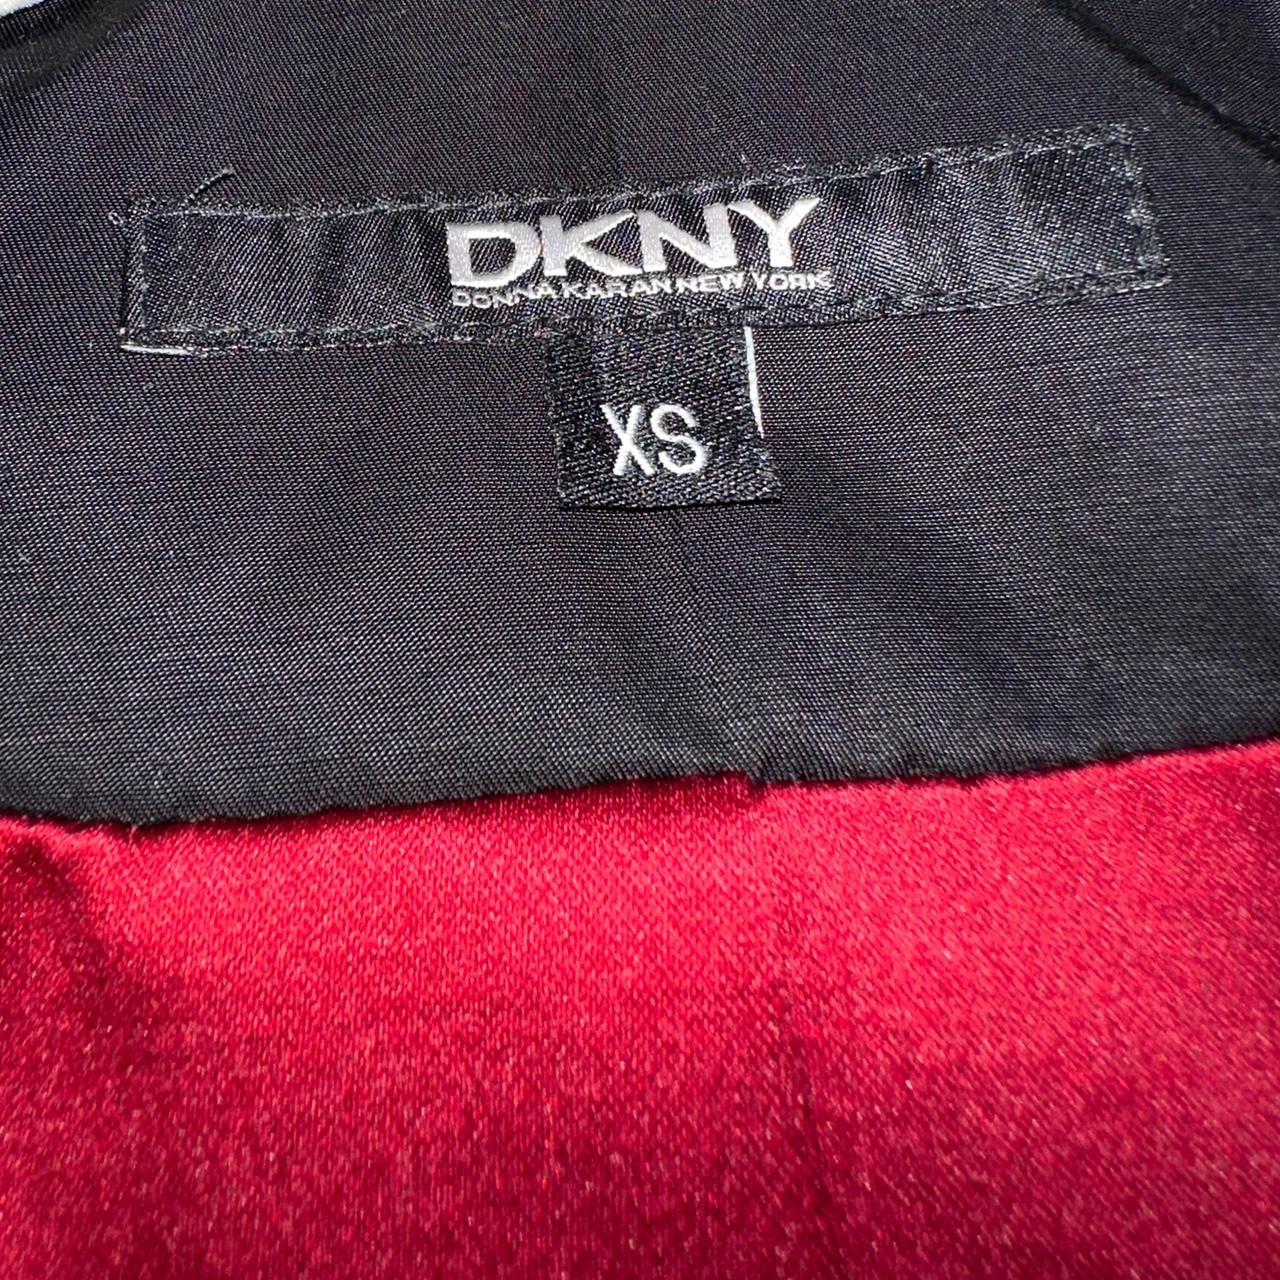 Dark Academia DKNY Ruffle Front Coat 🧛🖤🕷️ - Brand:... - Depop